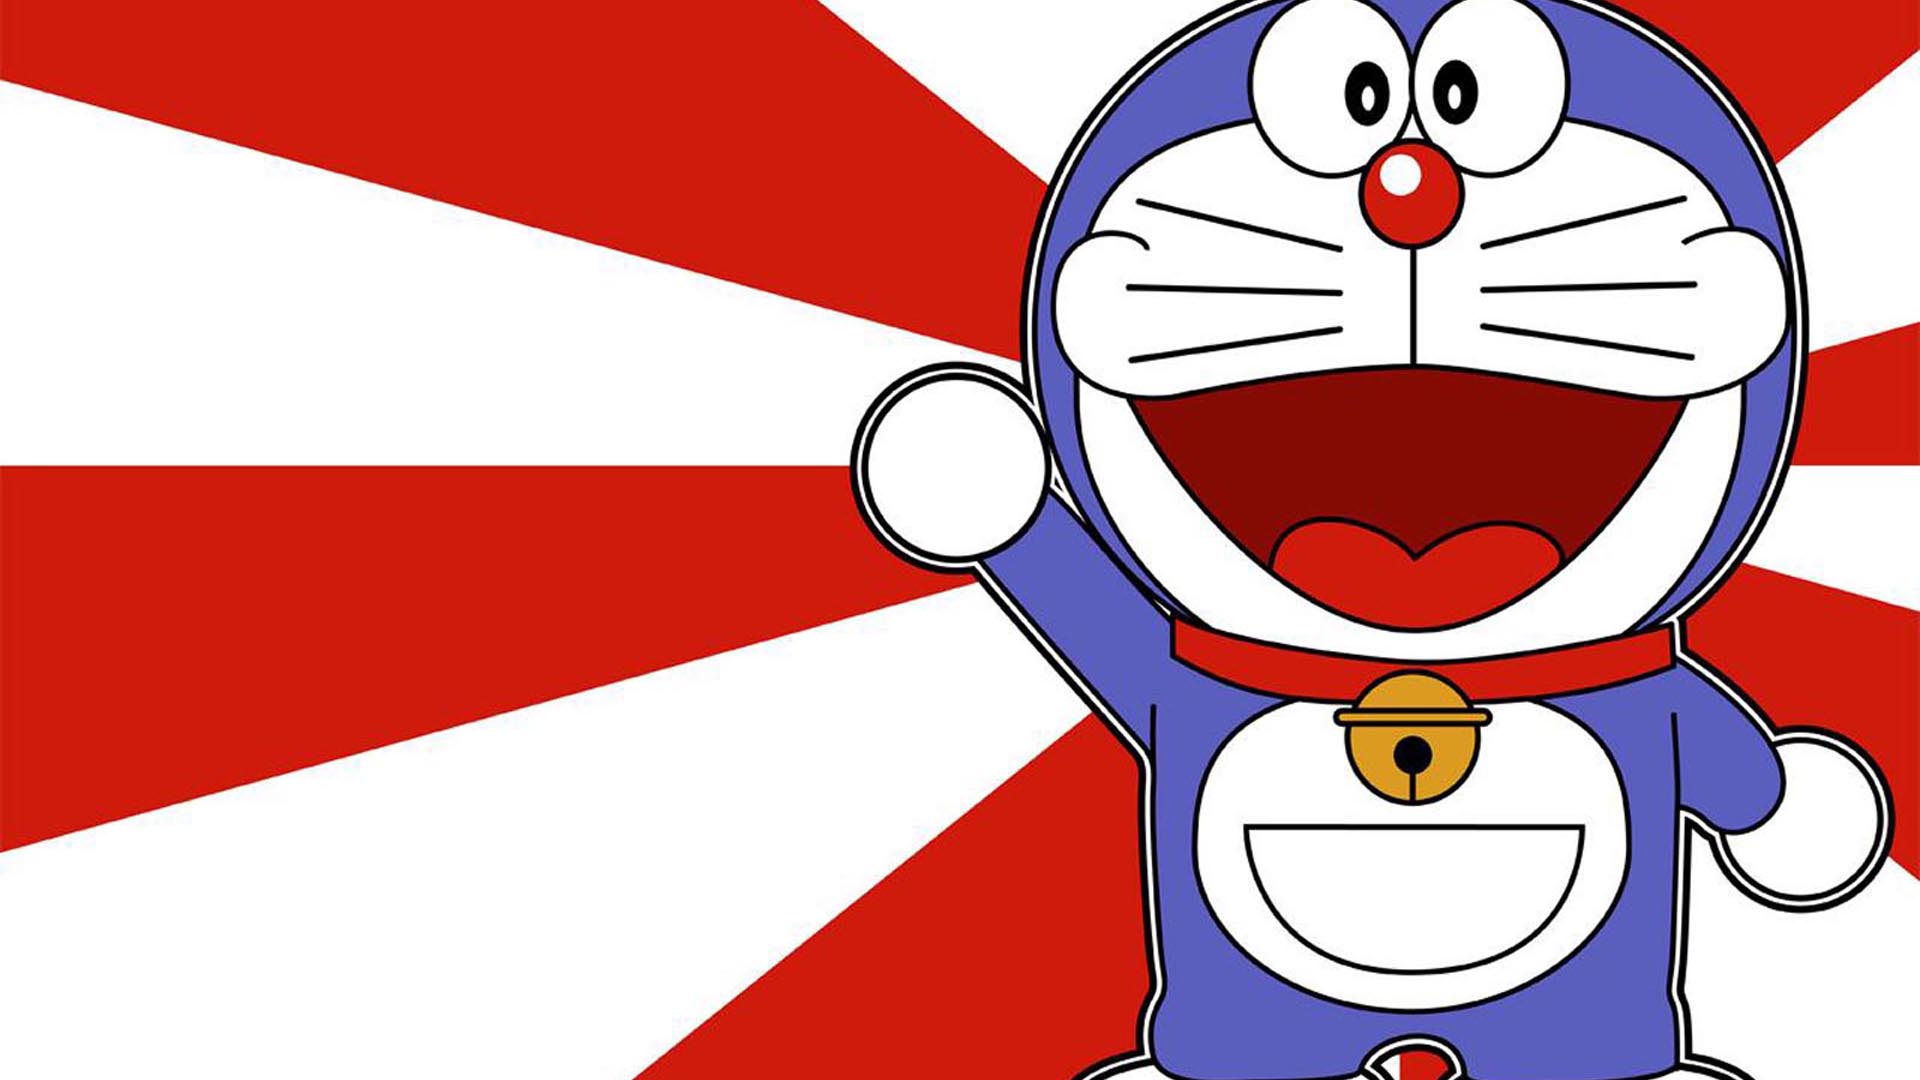 Tận hưởng sự quyến rũ và đẹp đẽ của những hình nền Doraemon độ phân giải cao. Với độ sắc nét và chi tiết chính xác, bạn có thể trải nghiệm thực tế những chi tiết nhỏ nhặt của thế giới Doraemon. Hãy tìm kiếm ngay để lựa chọn cho mình những bức hình nền HD Doraemon đẹp nhất.